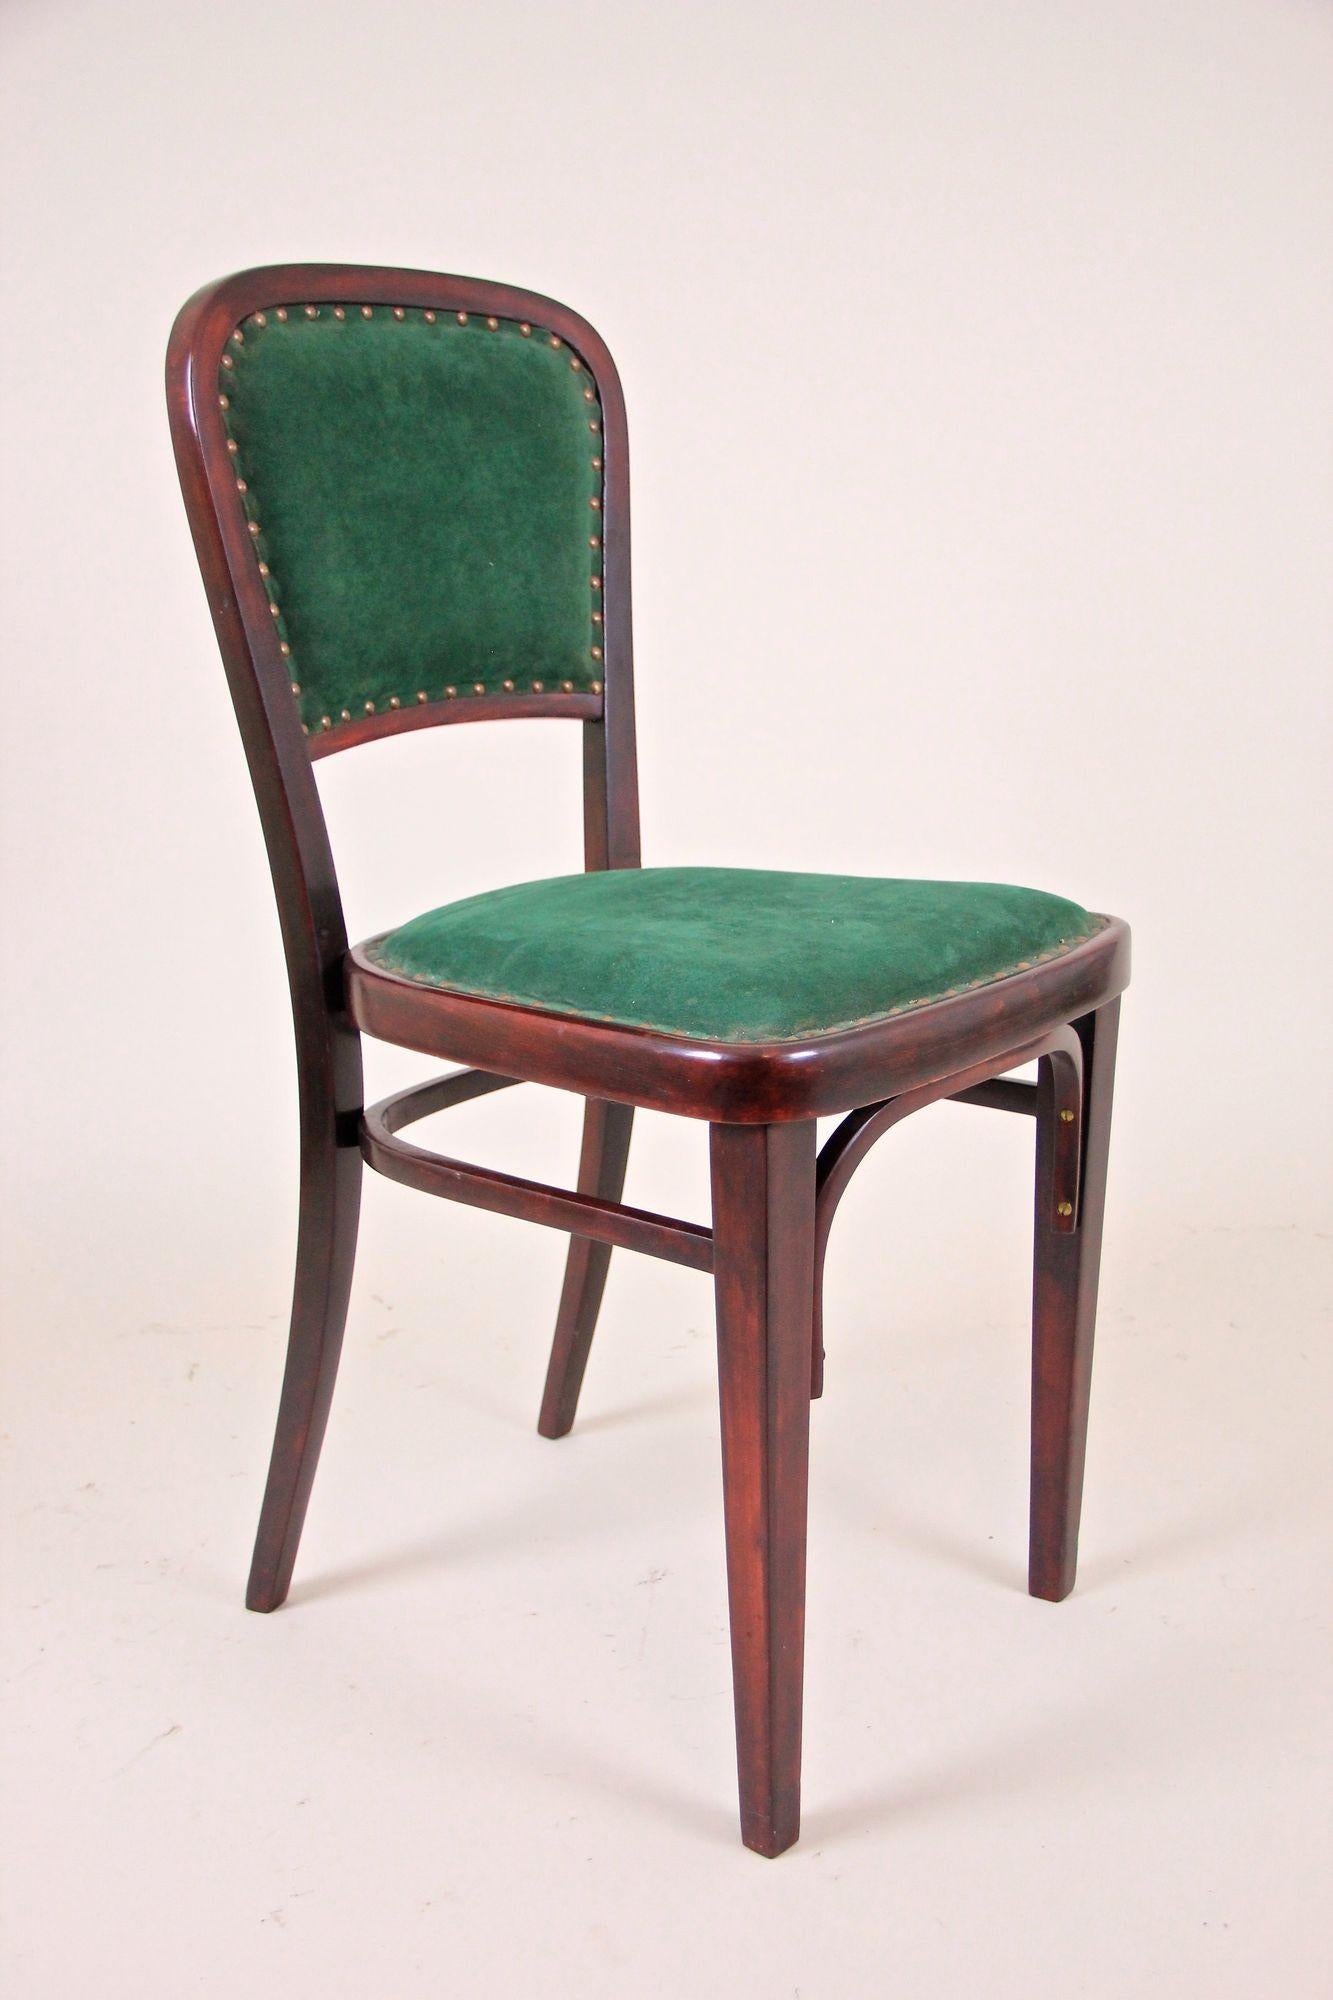 Fantastischer Satz von vier Thonet Stühlen aus der Jugendstilzeit um 1910 in Österreich. Diese einzigartigen Stühle wurden von keinem geringeren als dem berühmten österreichischen Architekten Marcel Kammerer für Thonet entworfen. Diese